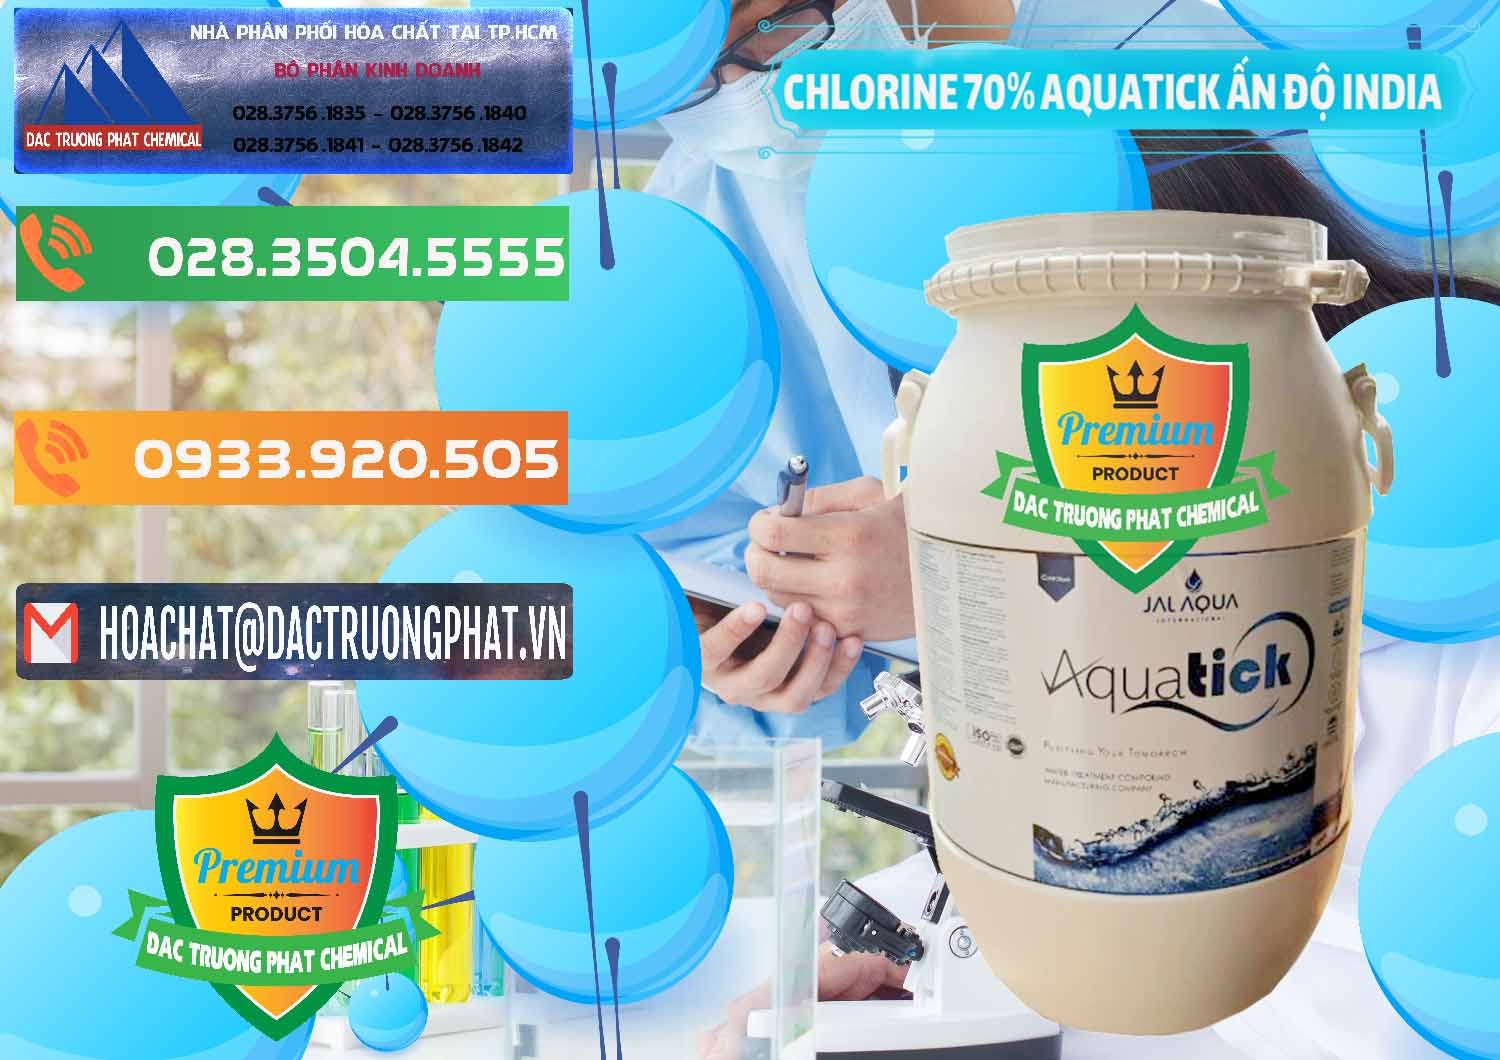 Đơn vị bán ( phân phối ) Chlorine – Clorin 70% Aquatick Jal Aqua Ấn Độ India - 0215 - Nơi cung cấp ( bán ) hóa chất tại TP.HCM - hoachatxulynuoc.com.vn